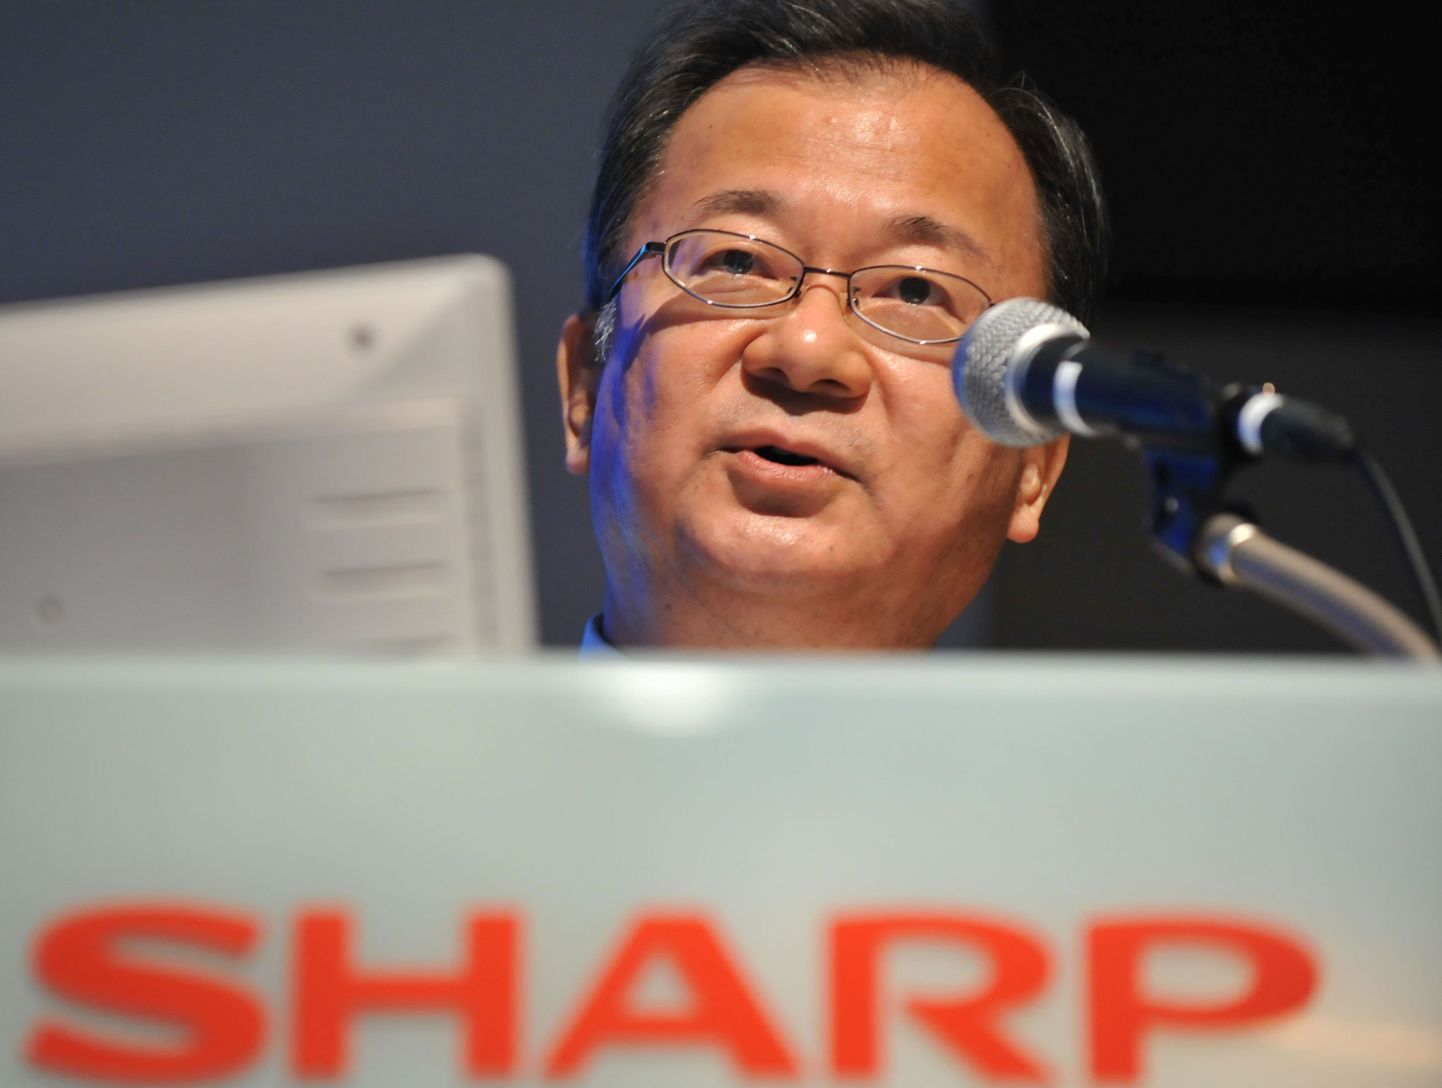 Sharpi president Takashi Okuda.